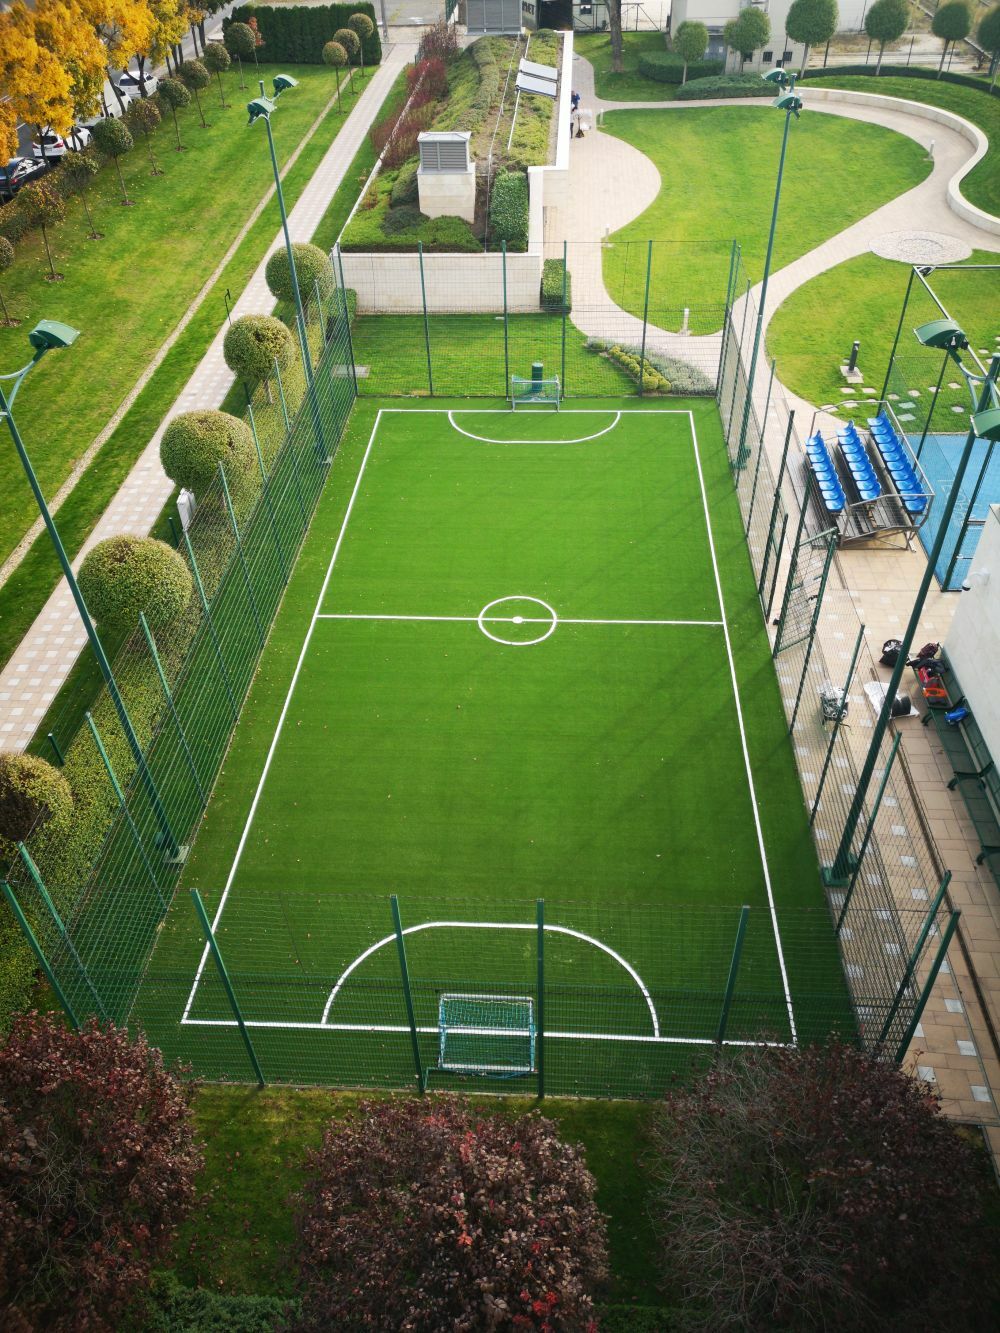 Holland Pázsit műfű focipálya borítása